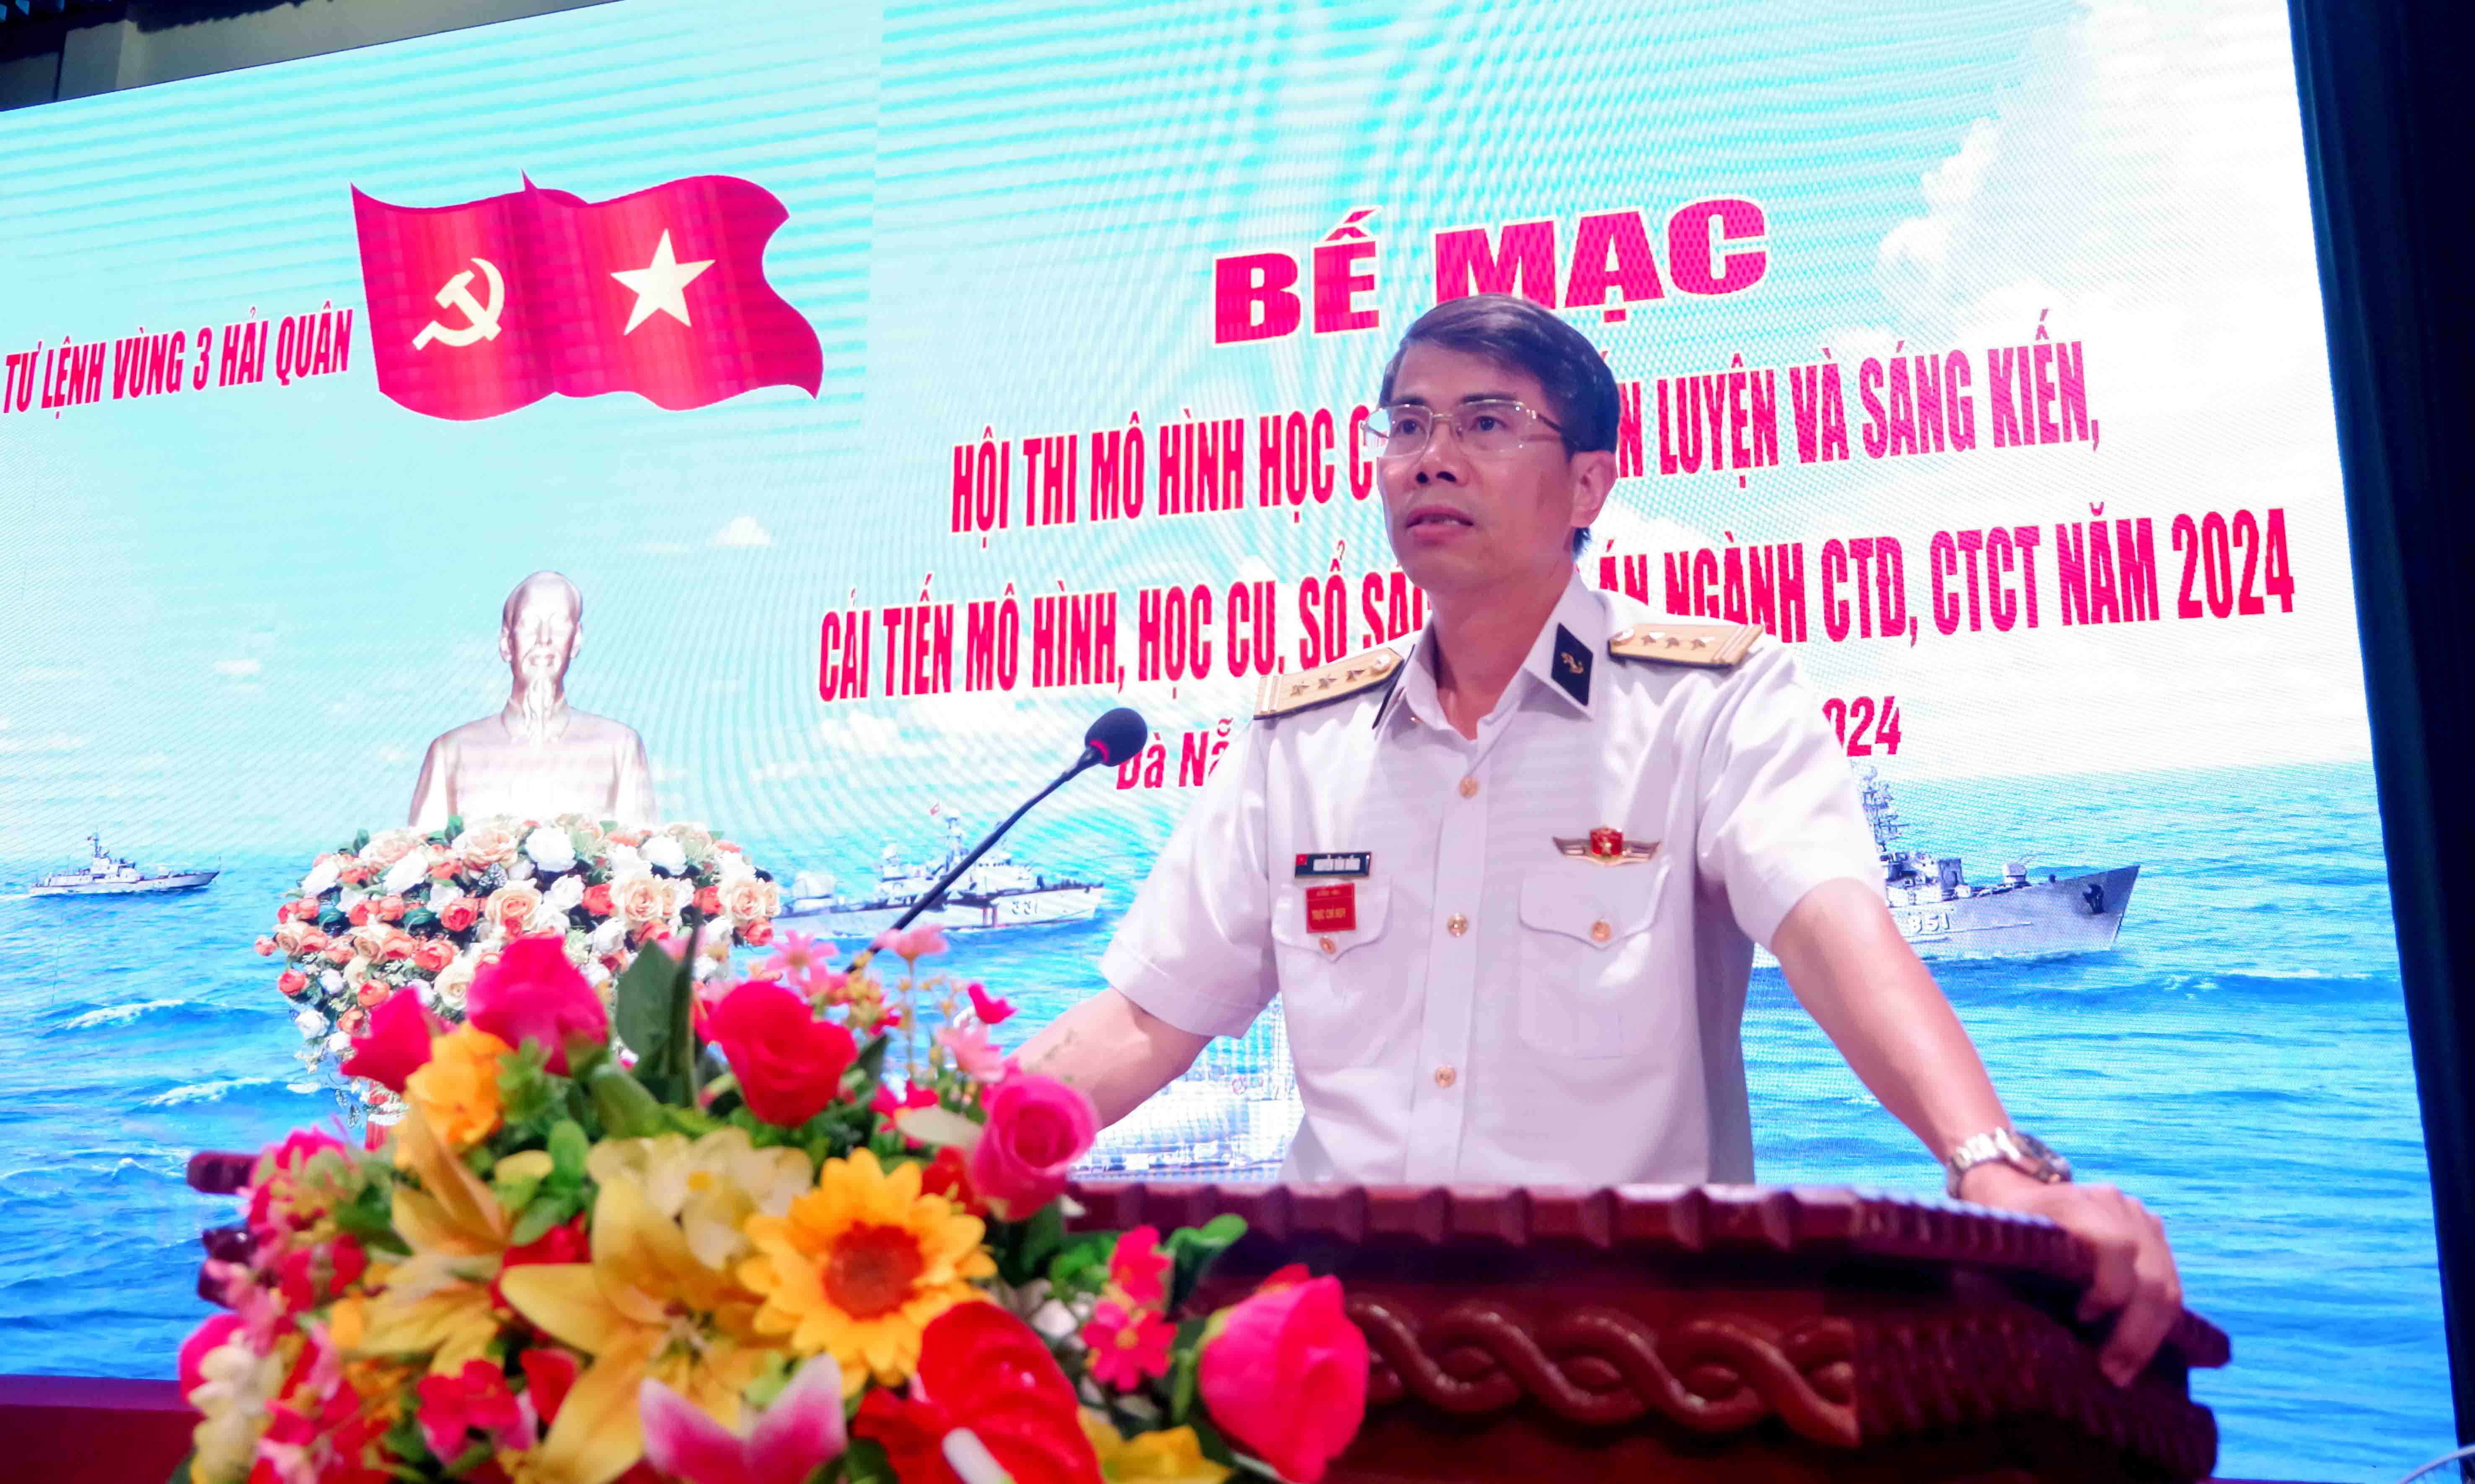 Thượng tá Nguyễn Văn Đồng, Phó Tư lệnh-Tham mưu trưởng Vùng 3 Hải quân phát biểu bế mạc hội thi.